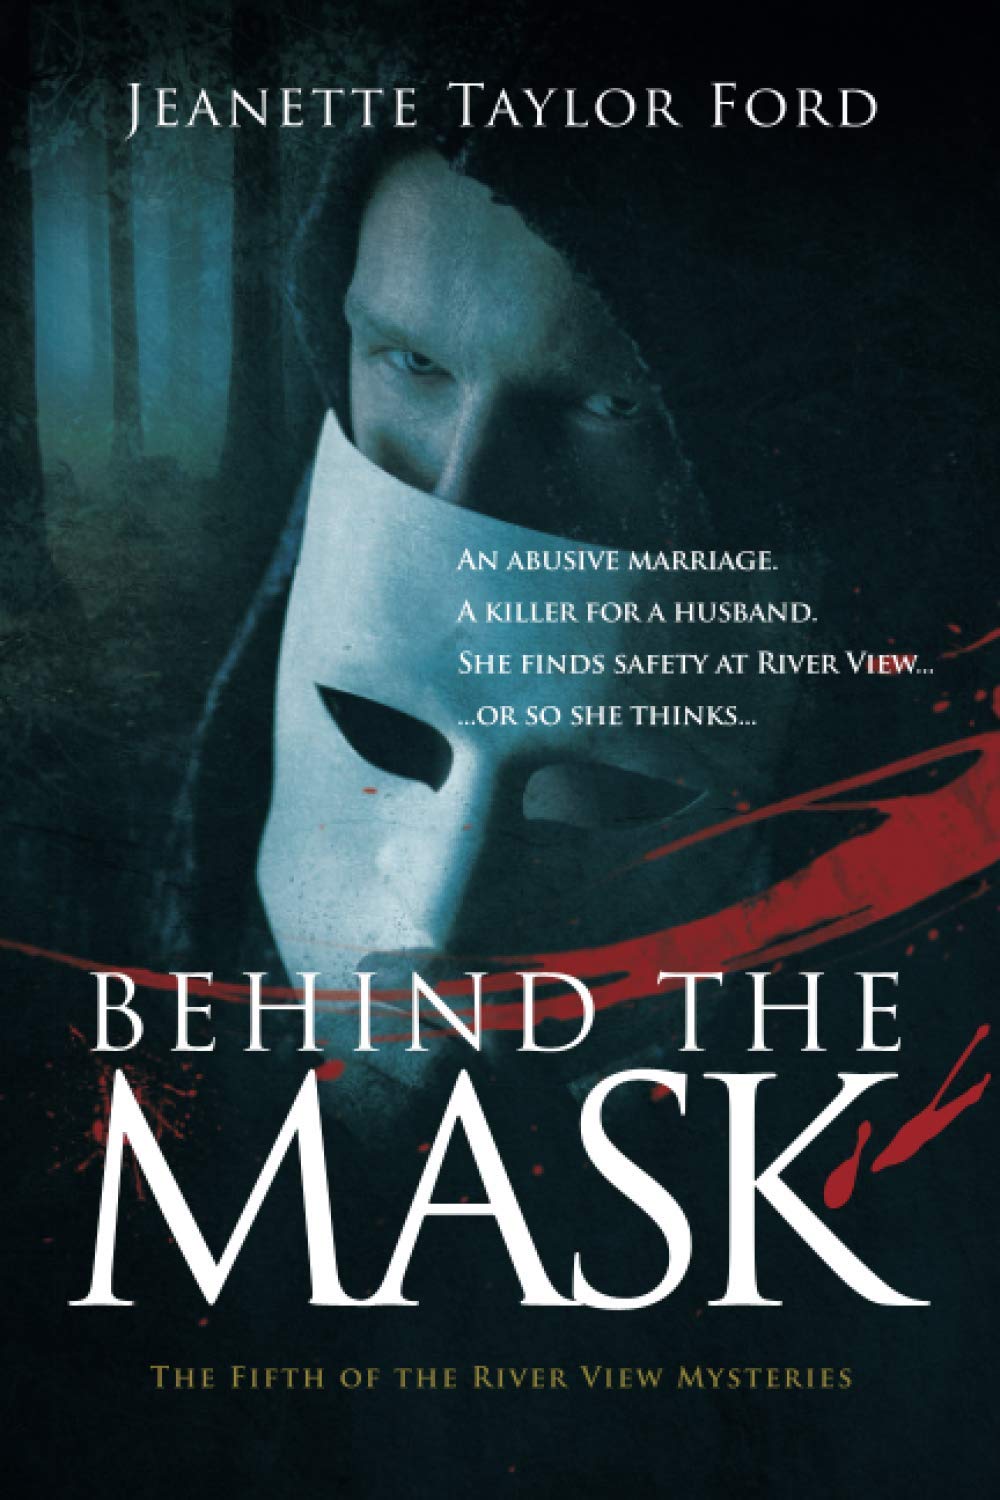 Книга про маски. Меняя маски книга. Behind the Mask. Маска книга. Влеу книга маски сброшены.